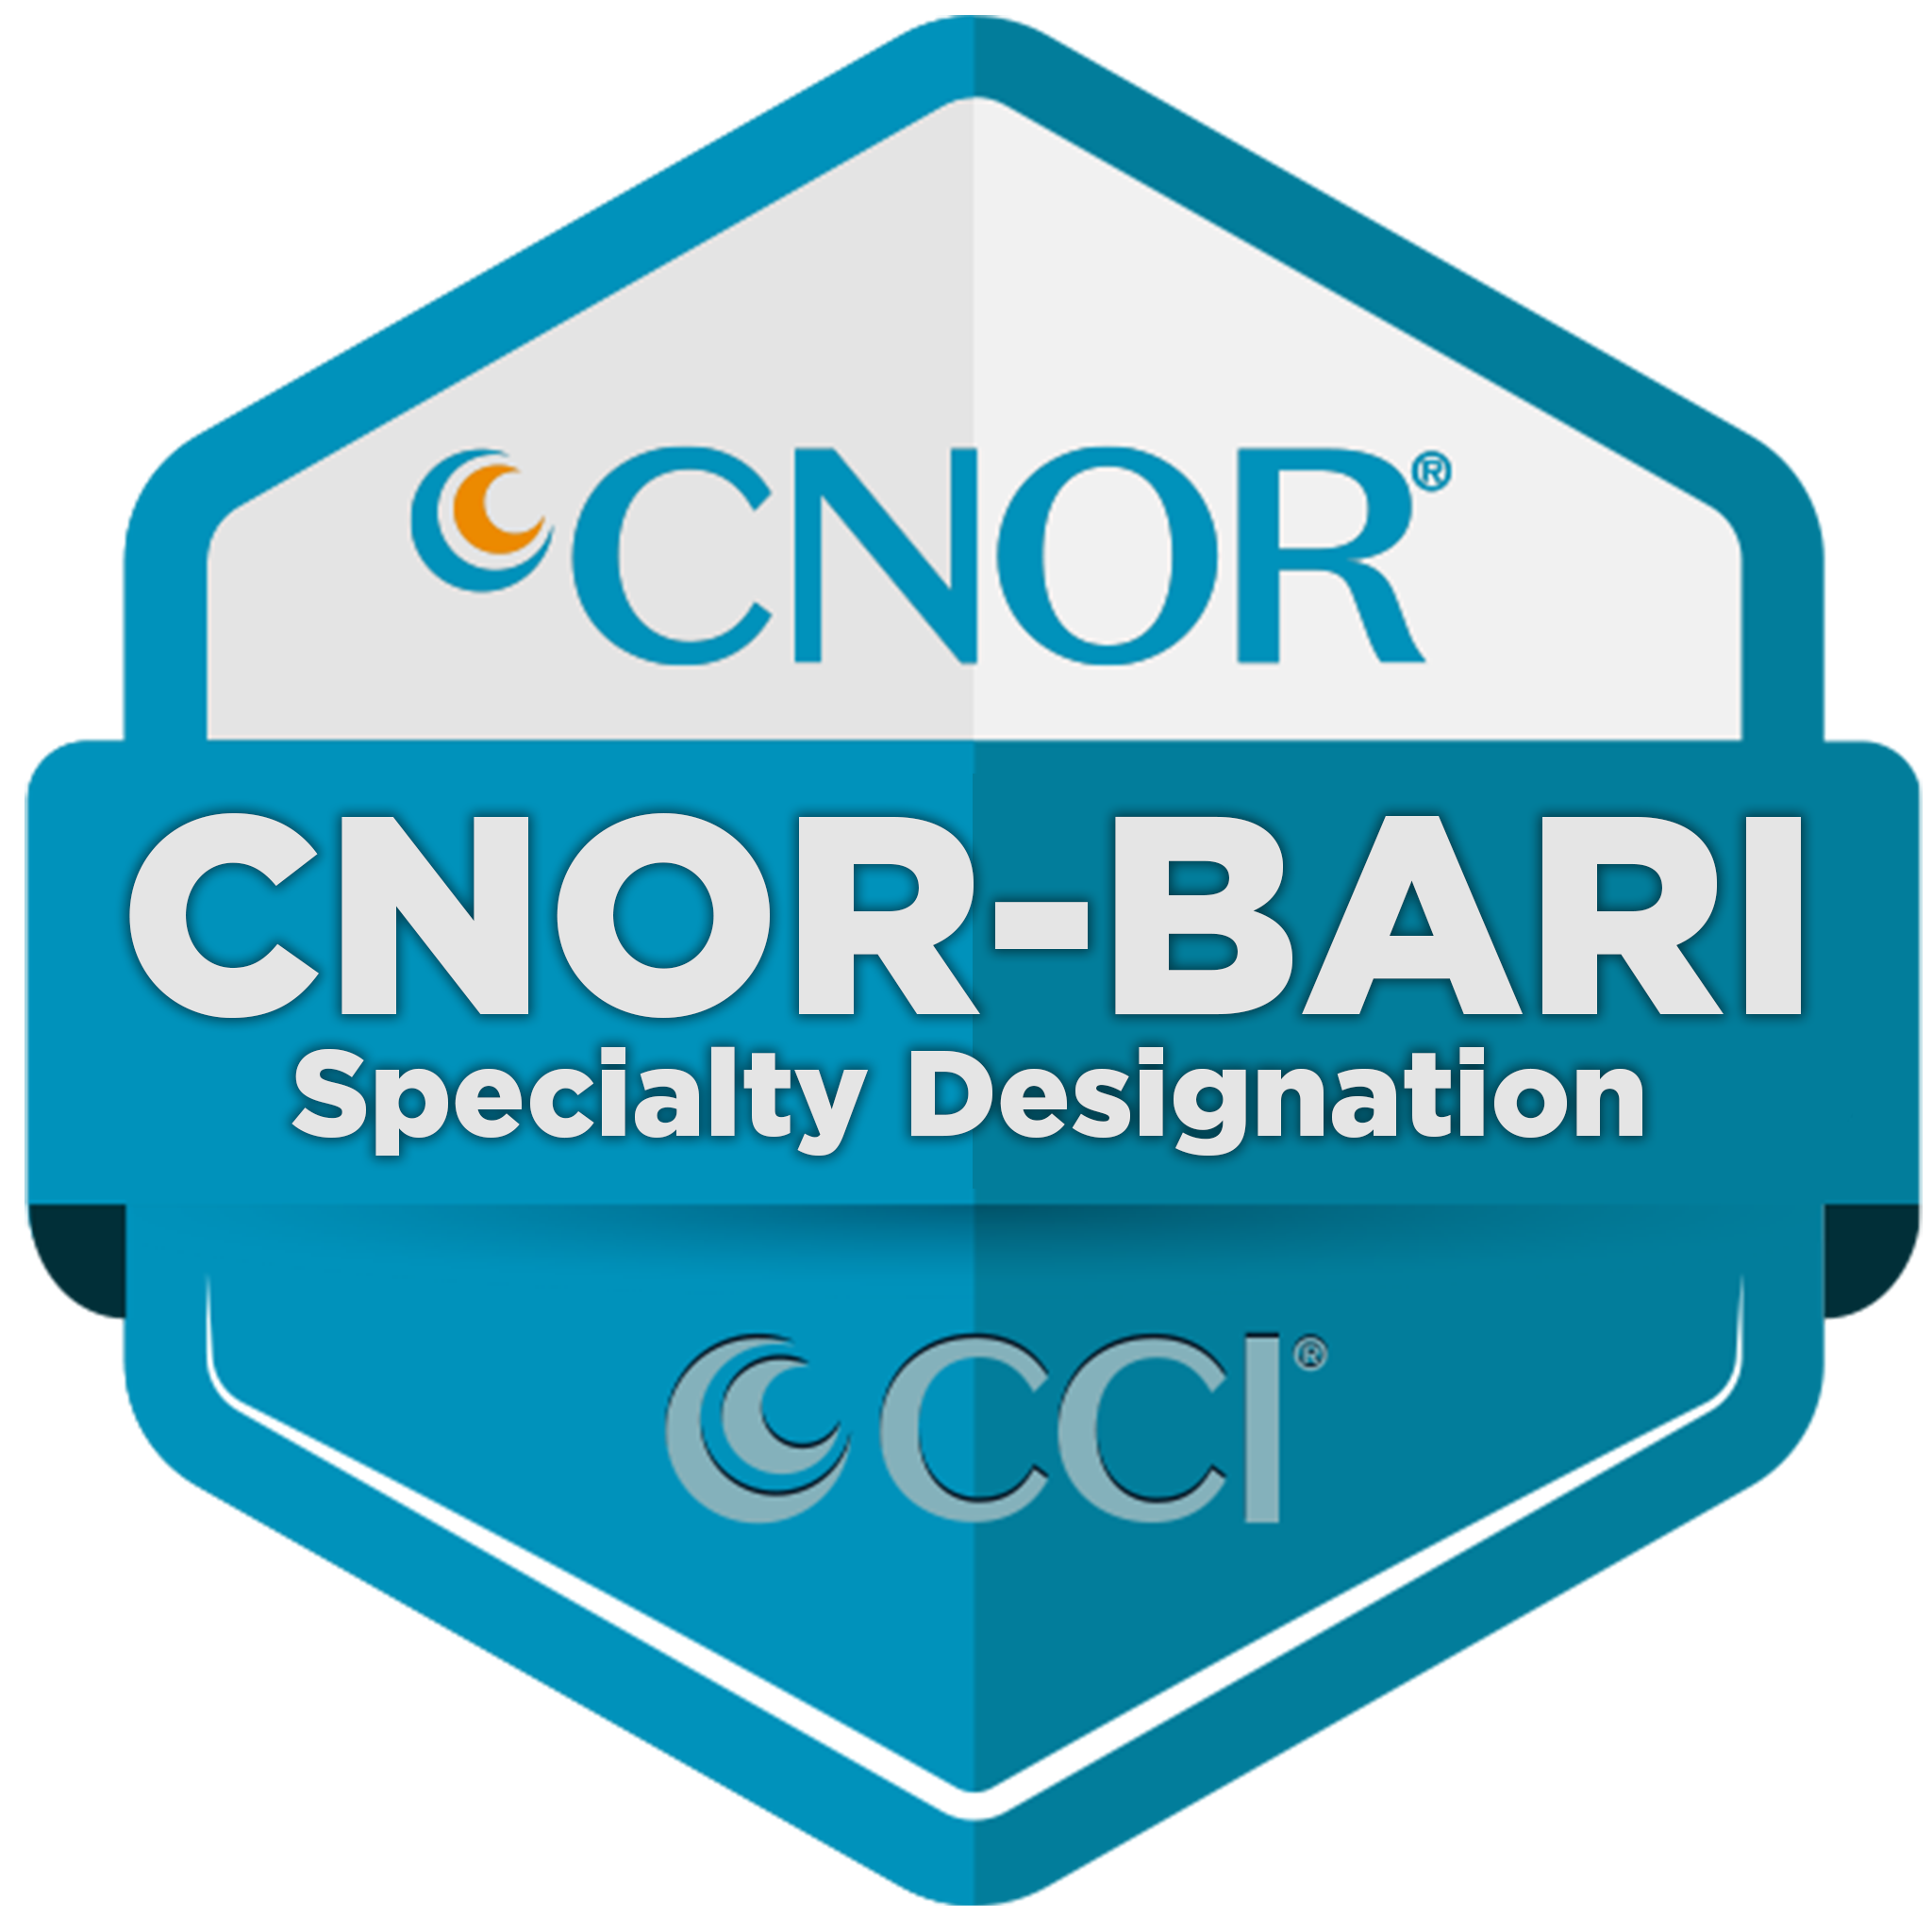 BARI Designation CNOR